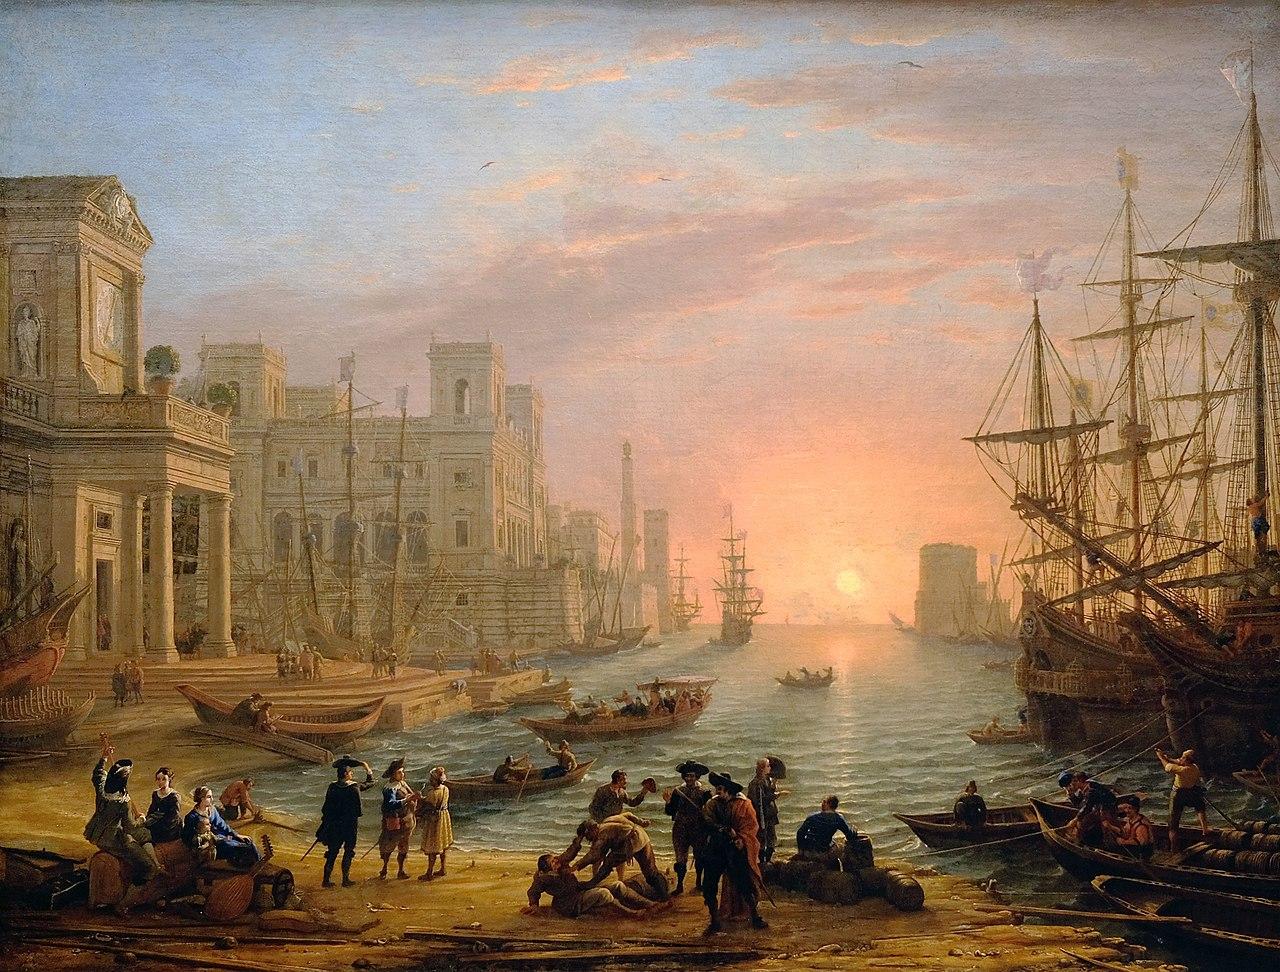 Claude Gellée di Le Lorrain, Port de mer au soleil couchant, 1639